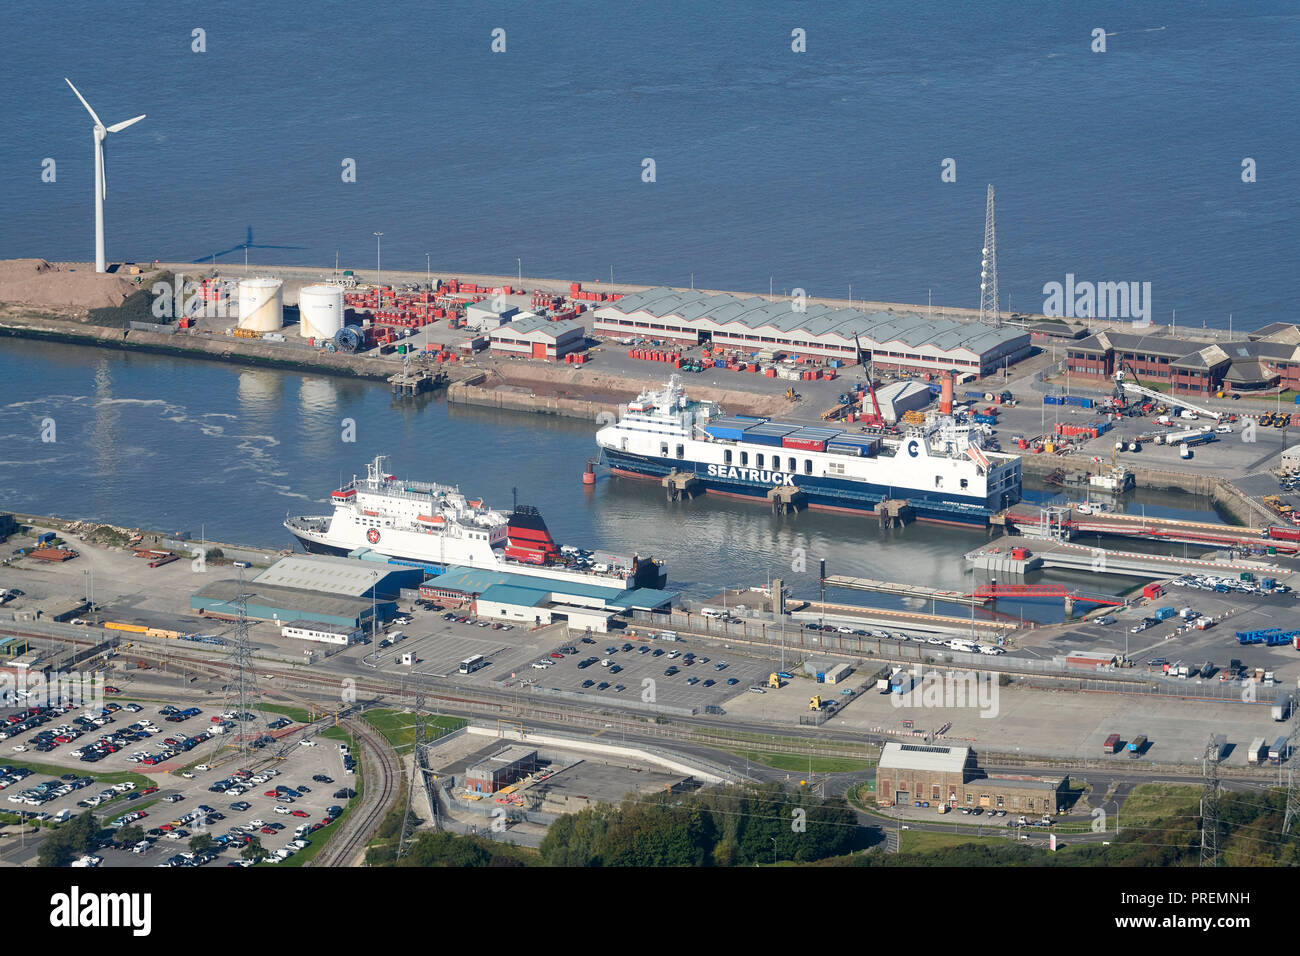 Ein Luftbild von Heysham Hafen, North West England, Großbritannien, am Rande der Morecambe Bay, Insel Man Fähre im Hafen Stockfoto